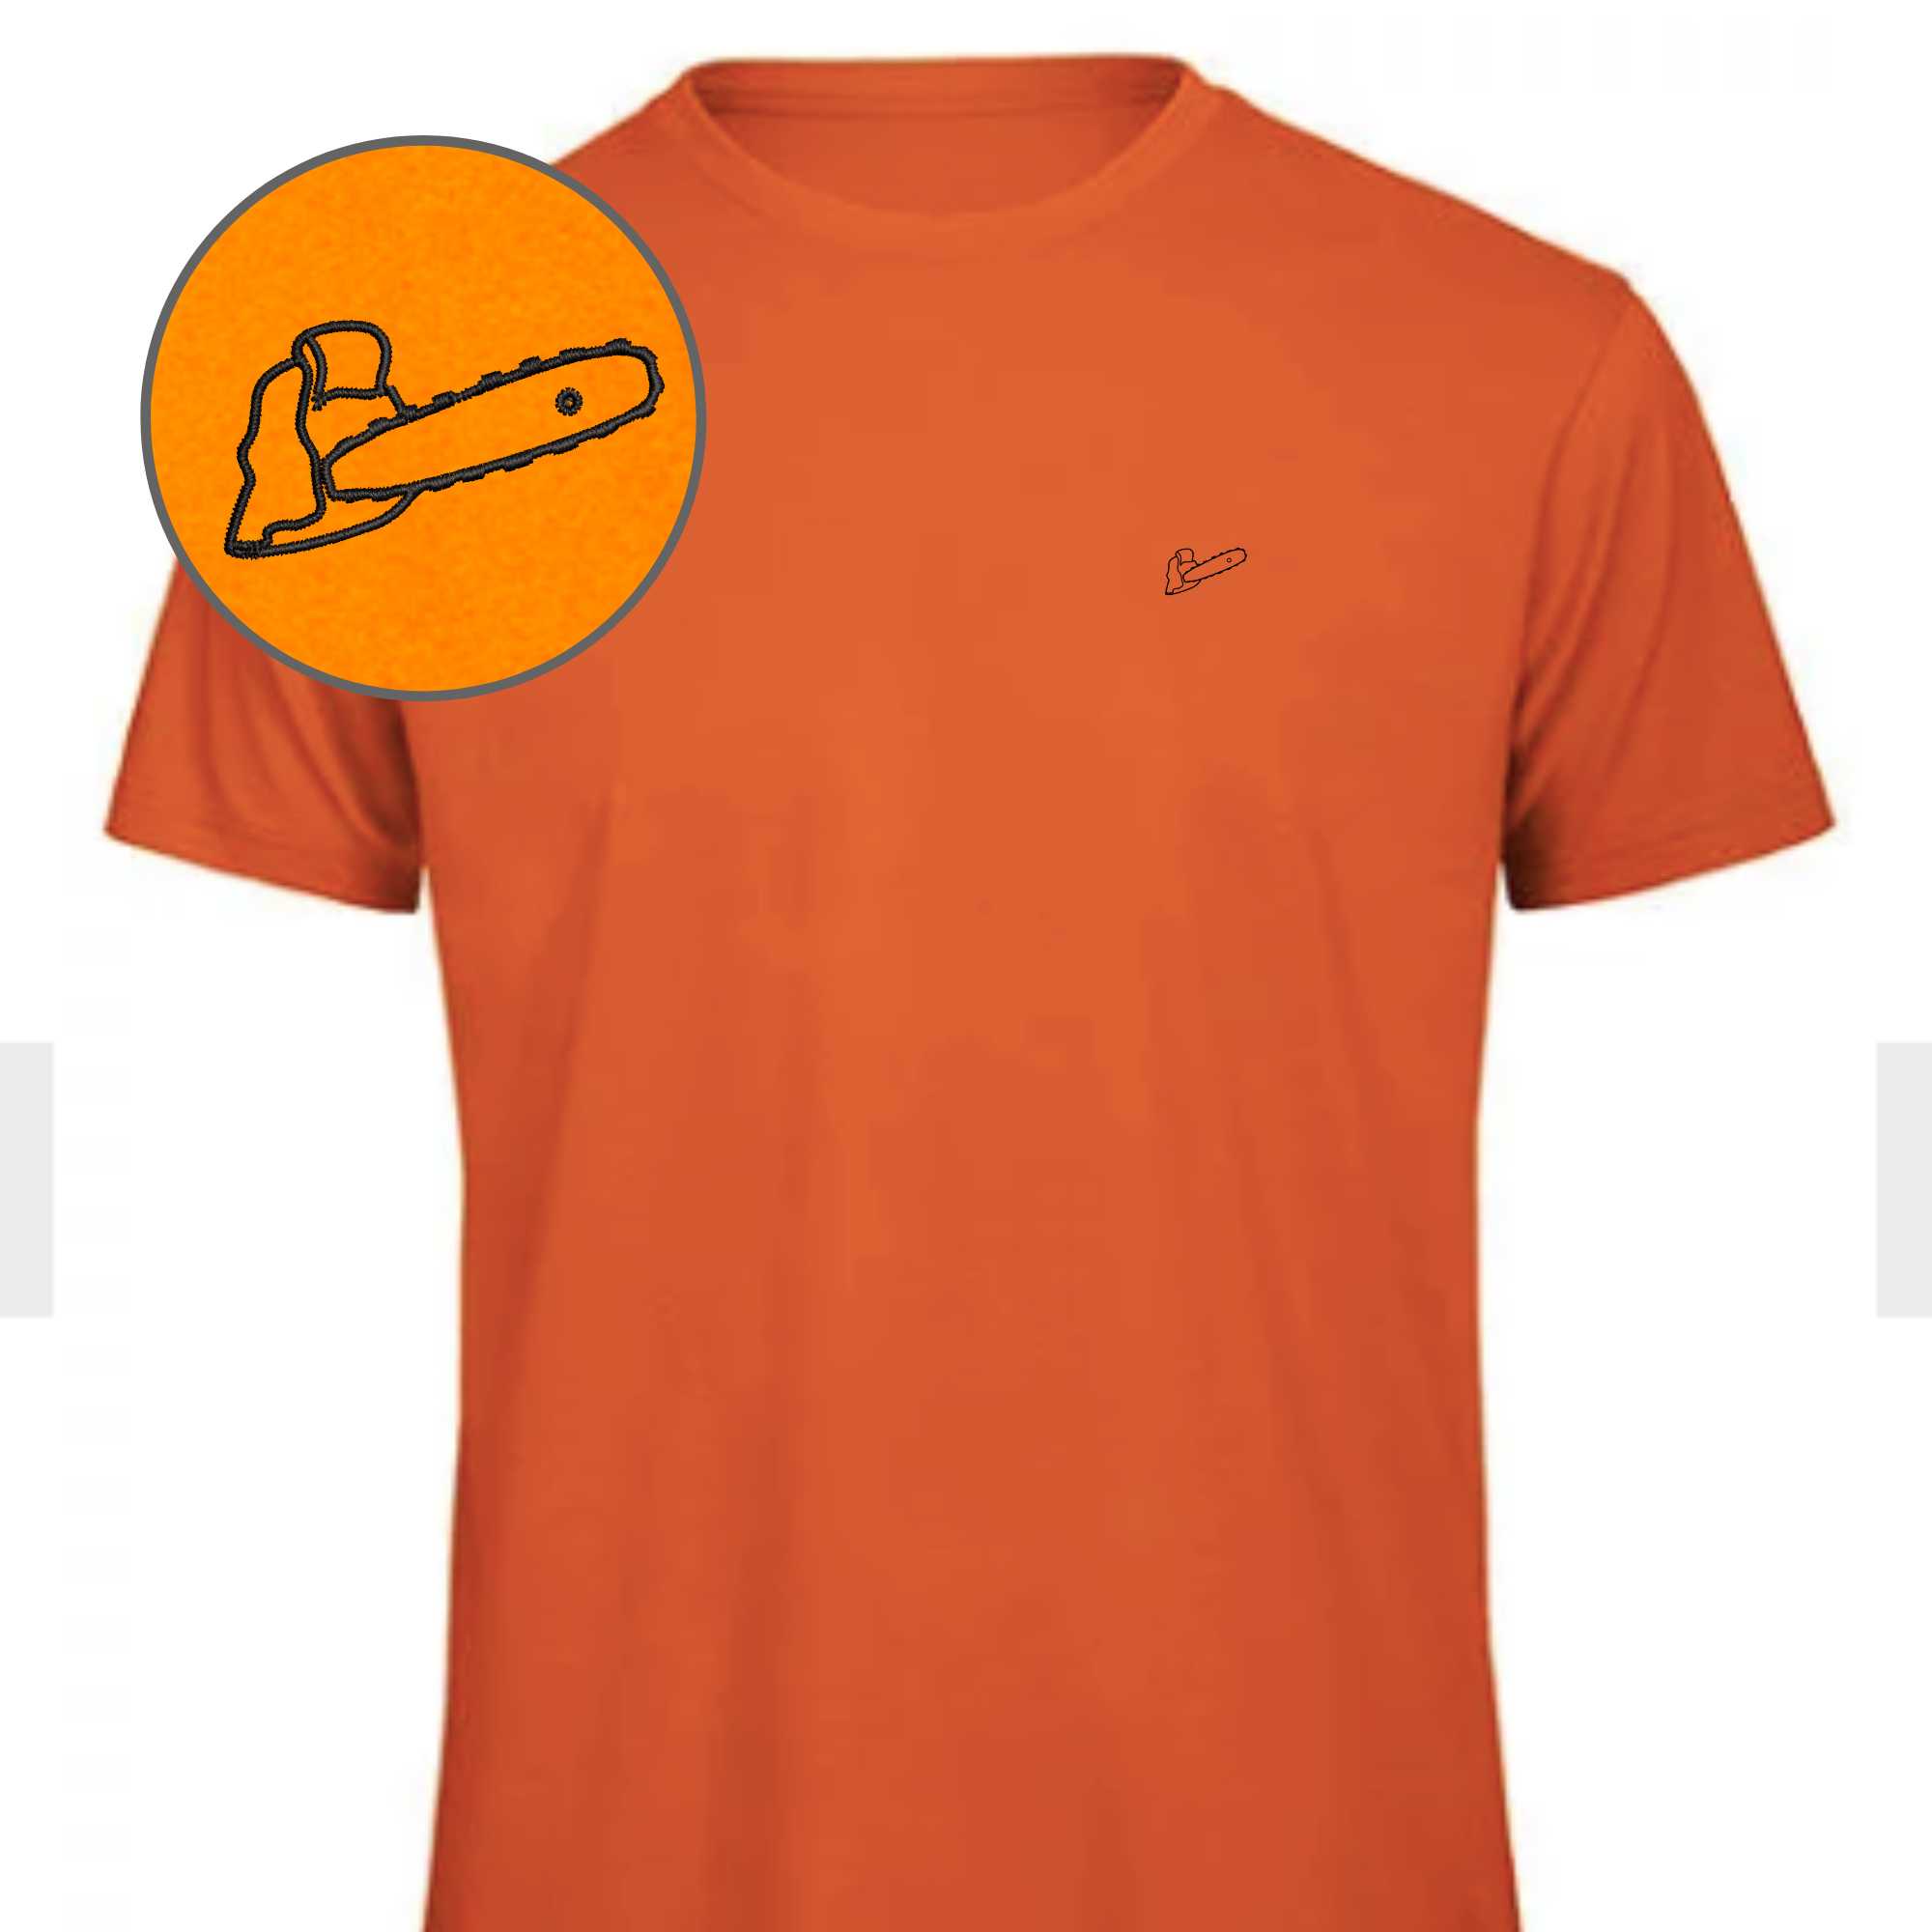 Motorsägen T-Shirt Herren  in kräftigem Orange mit einer Motorsäge auf die Brust gestickt